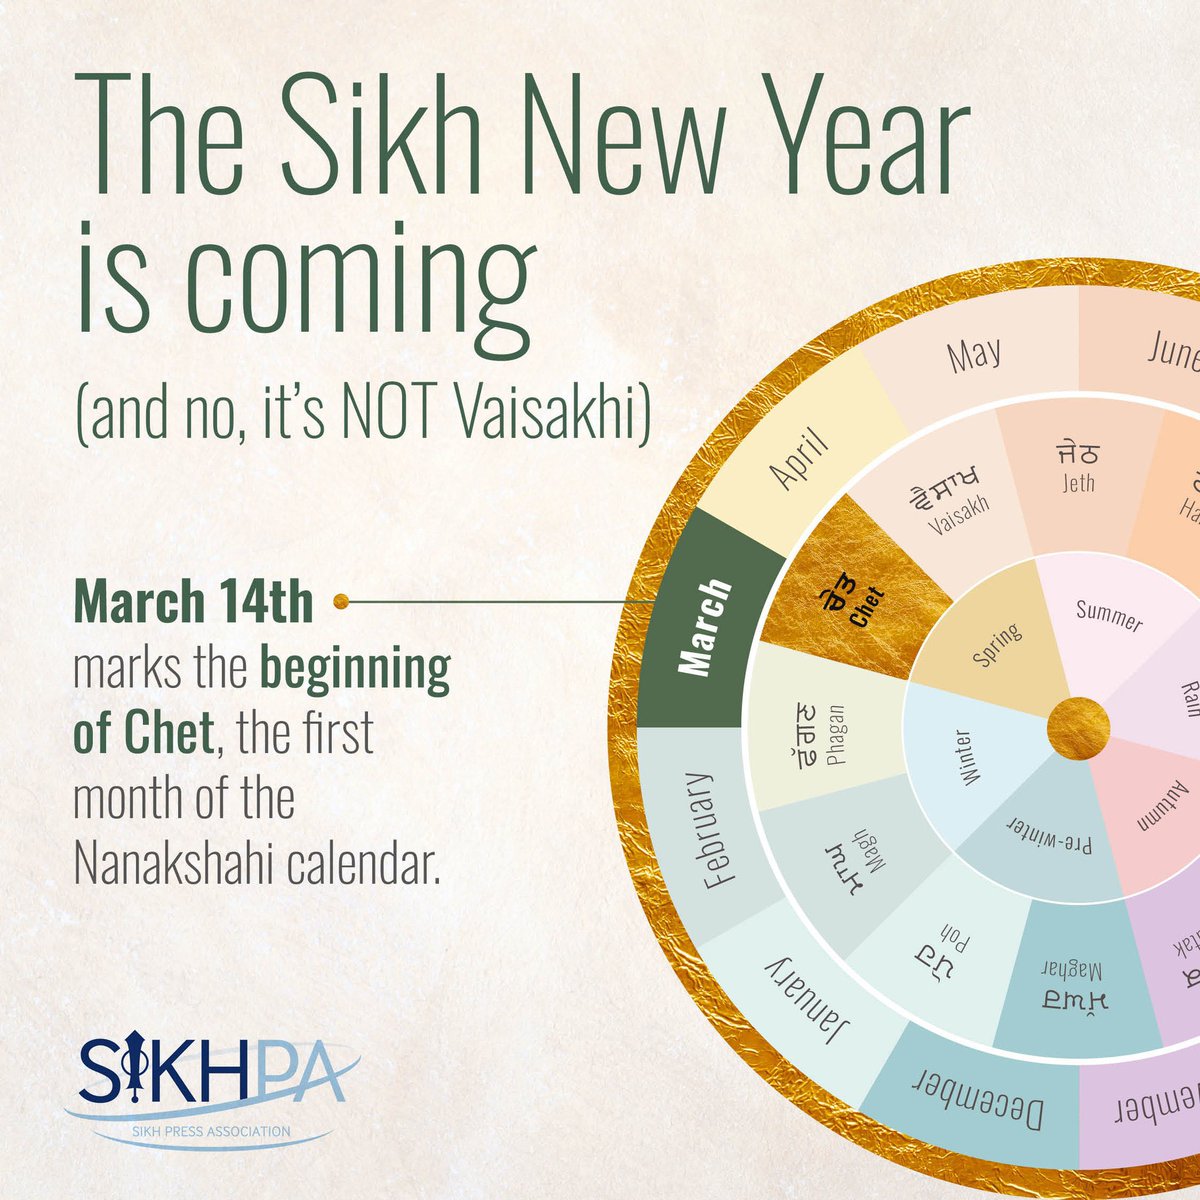 ਚੇਤਿਗੋਵਿੰਦੁਅਰਾਧੀਐਹੋਵੈਅਨੰਦੁਘਣਾ॥ In the month of Chayt, by meditating on the Lord of the Universe, a deep and profound joy arises. Happy Sikh New Year to those celebrating today💜 #SikhNewYear